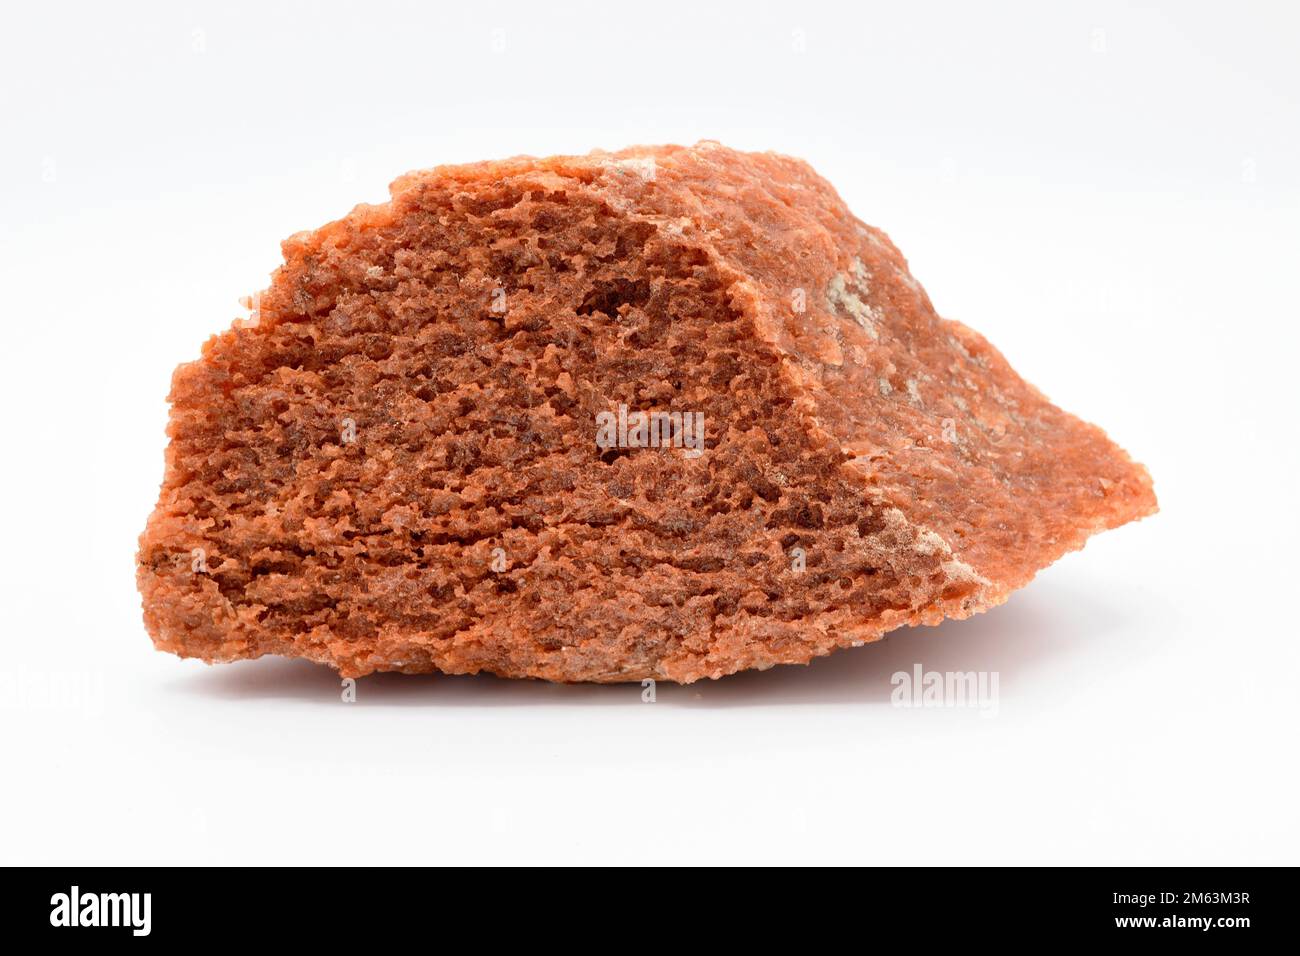 Carnalit oder Carnallit ist ein Kalium-Magnesiumchlorid-Mineral. Diese Probe stammt aus Cardona, Barcelona, Katalonien, Spanien. Stockfoto